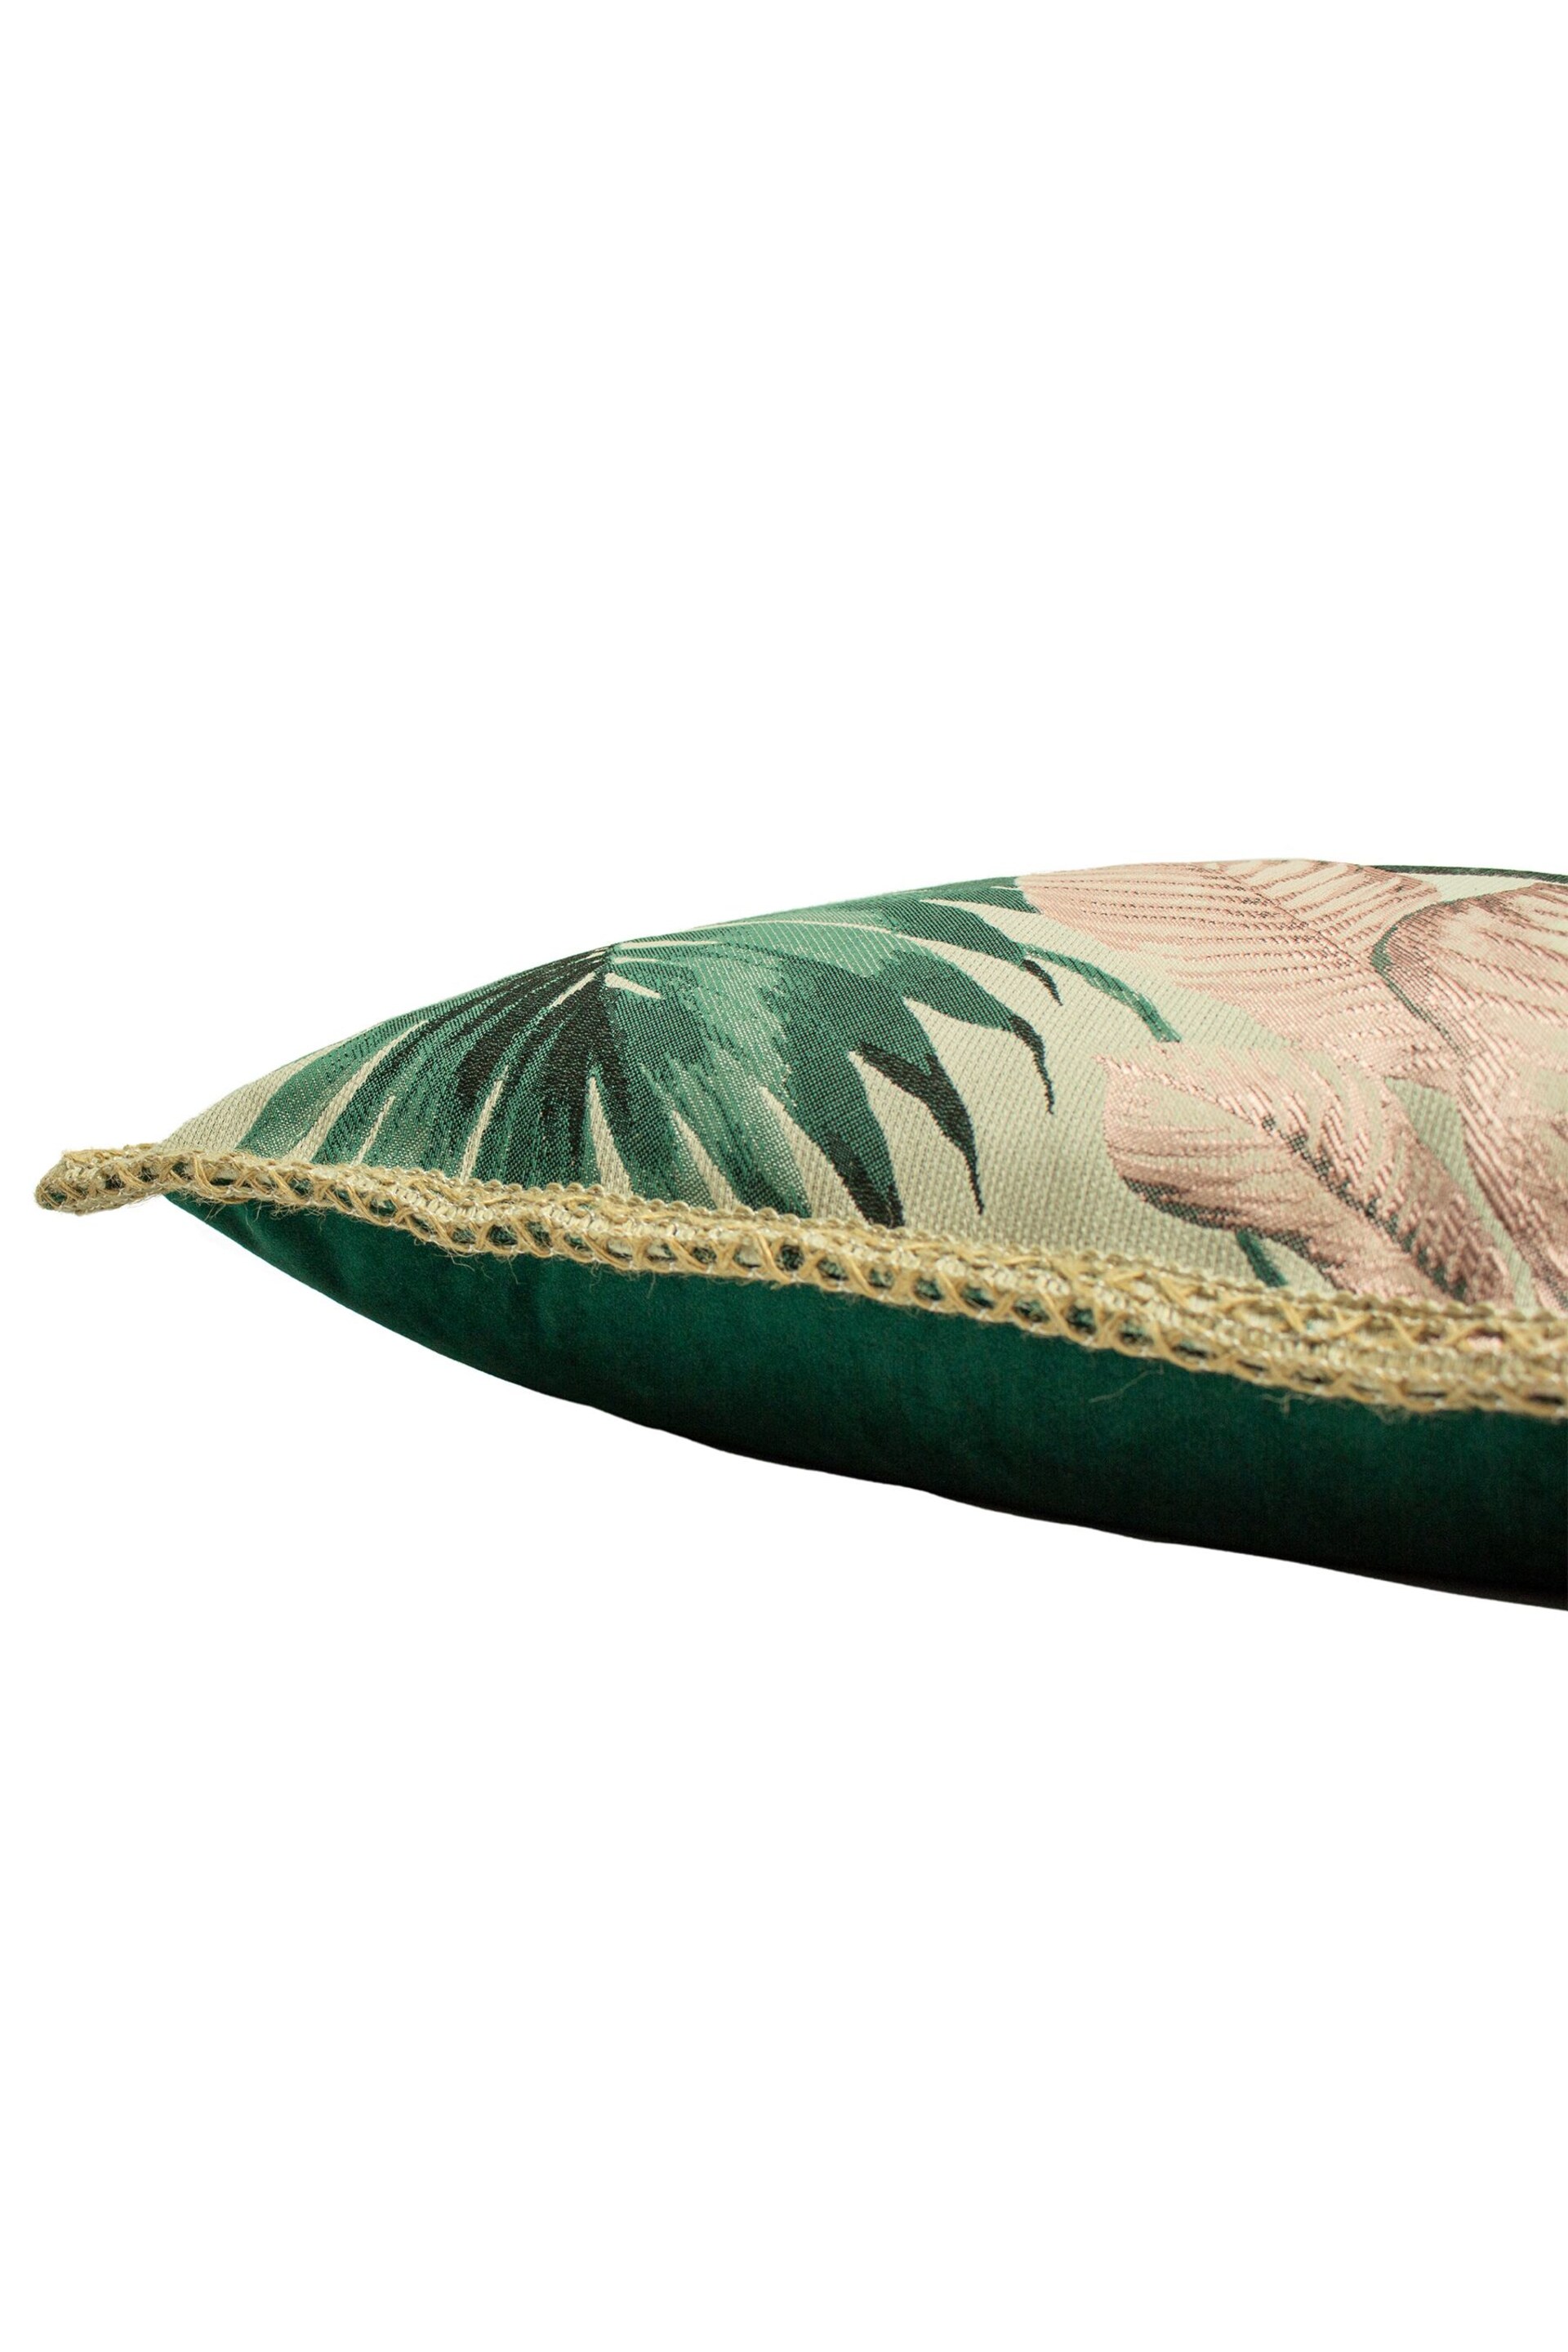 furn. Pink Amazonia Botanical Polyester Filled Cushion - Image 4 of 5